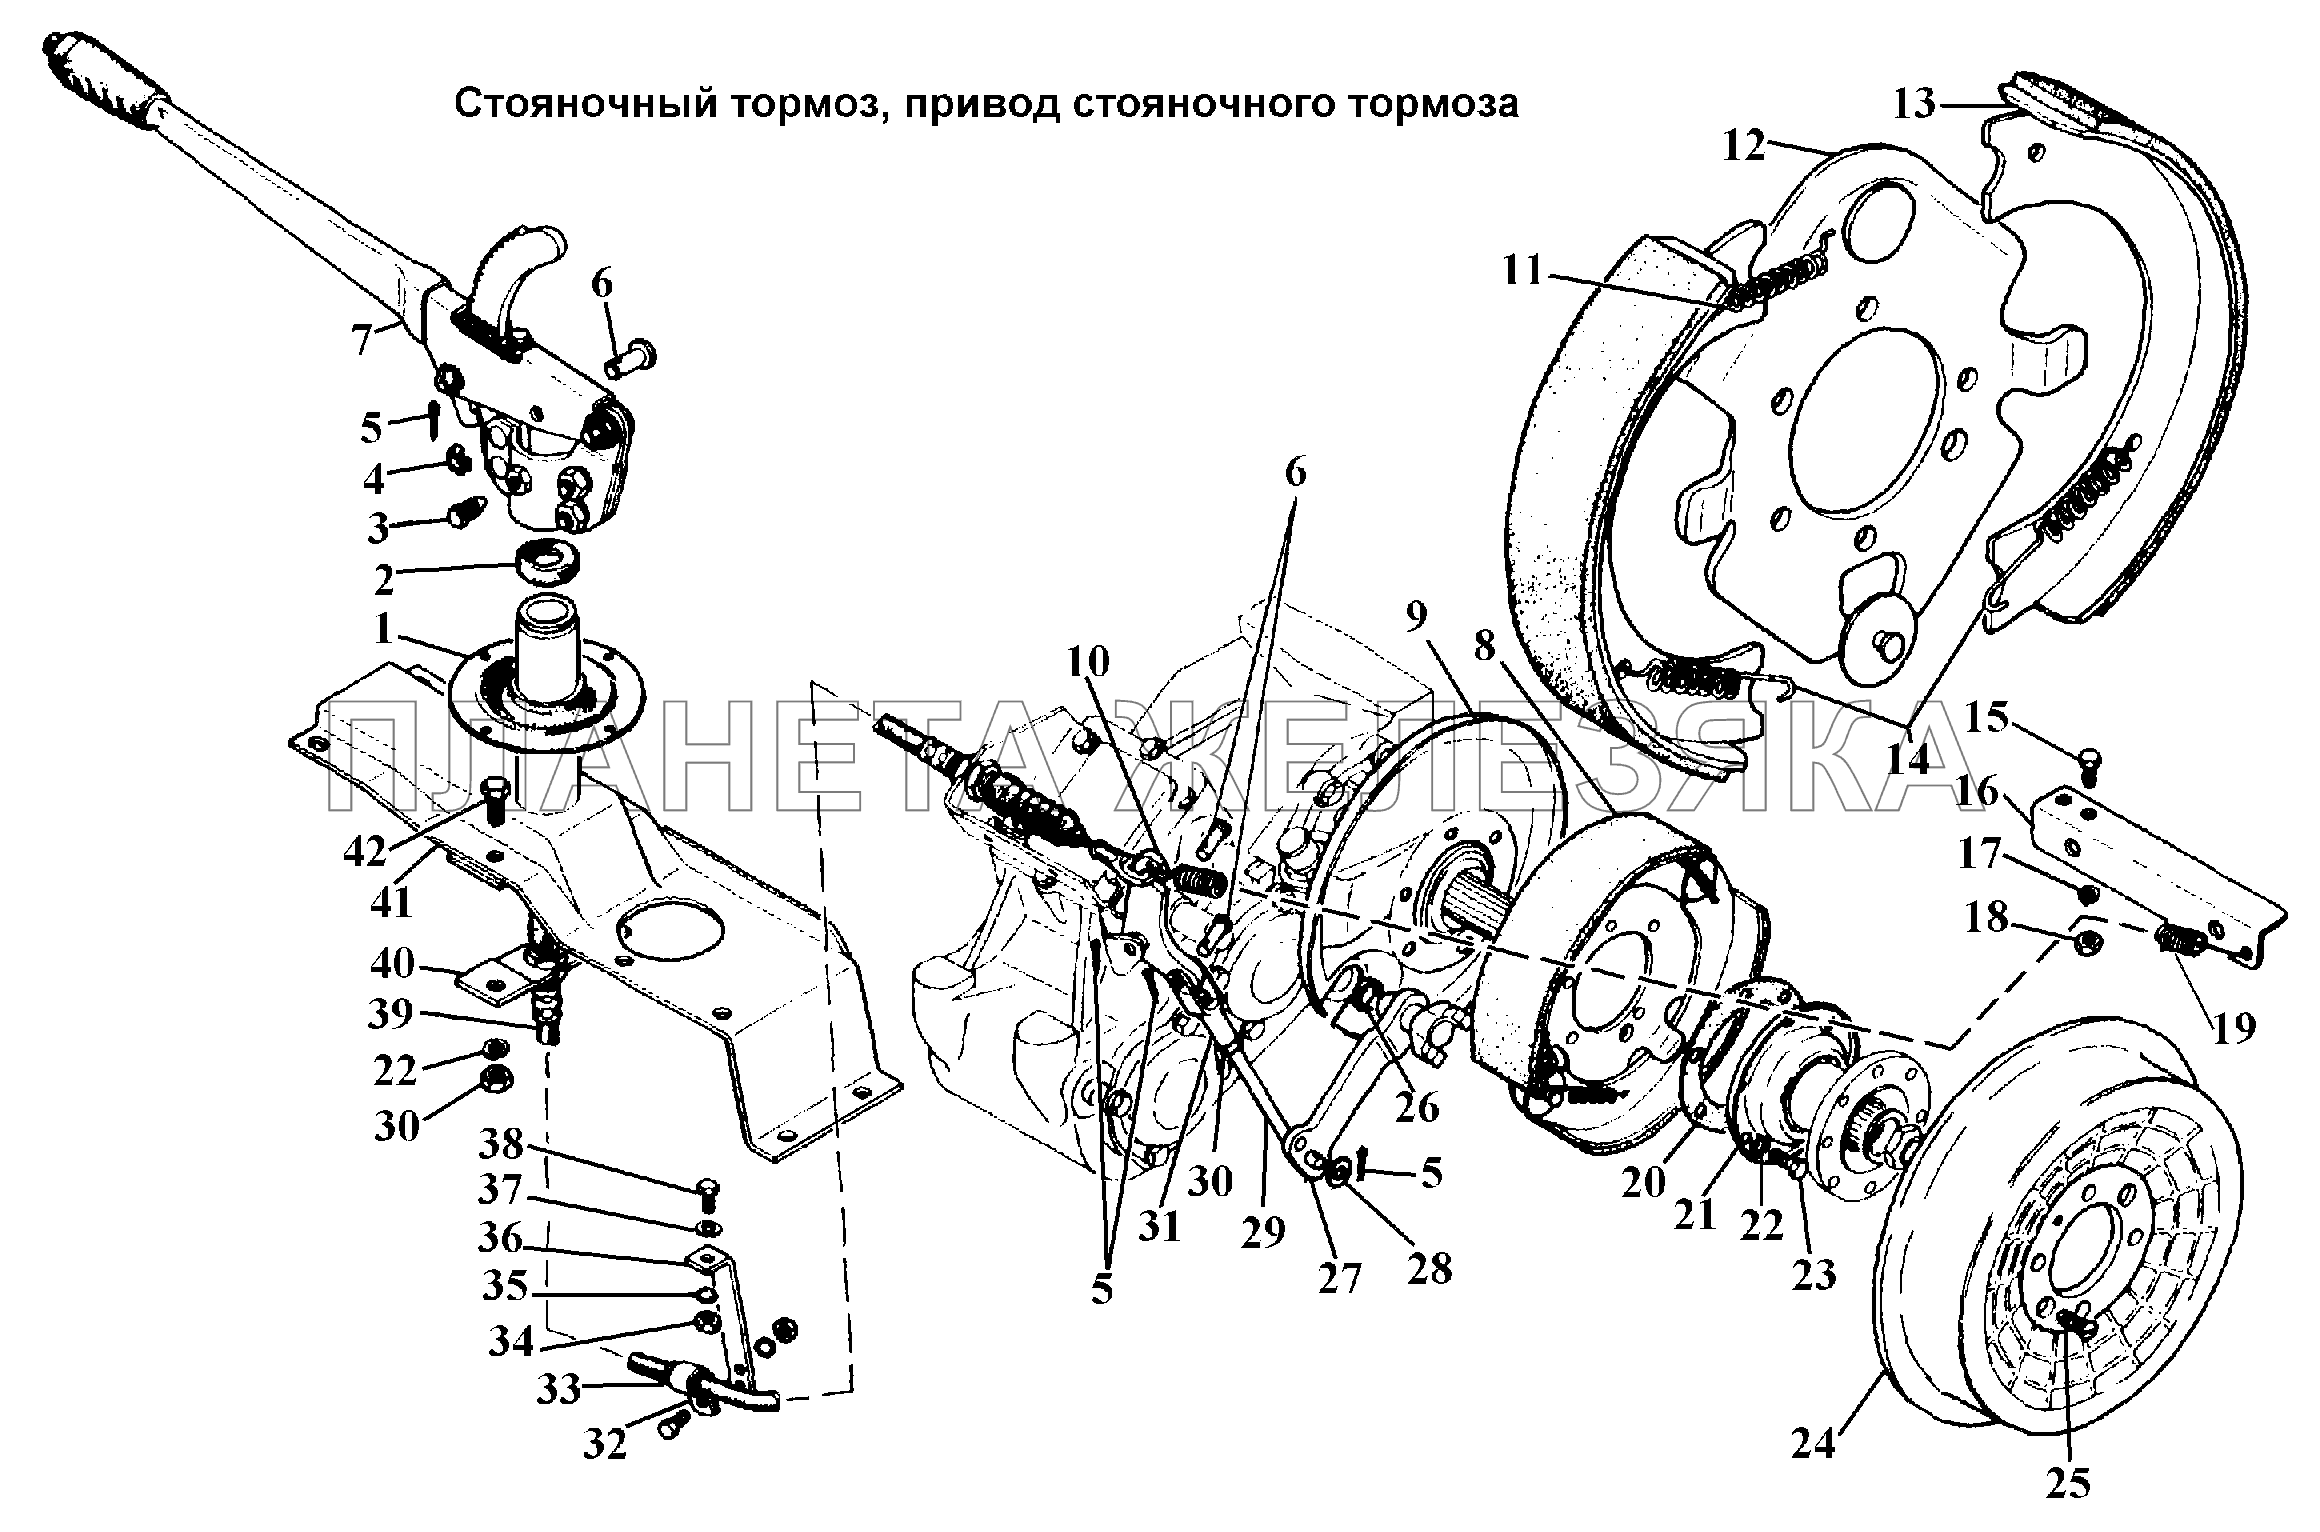 Стояночный тормоз и его привод ГАЗ-3308